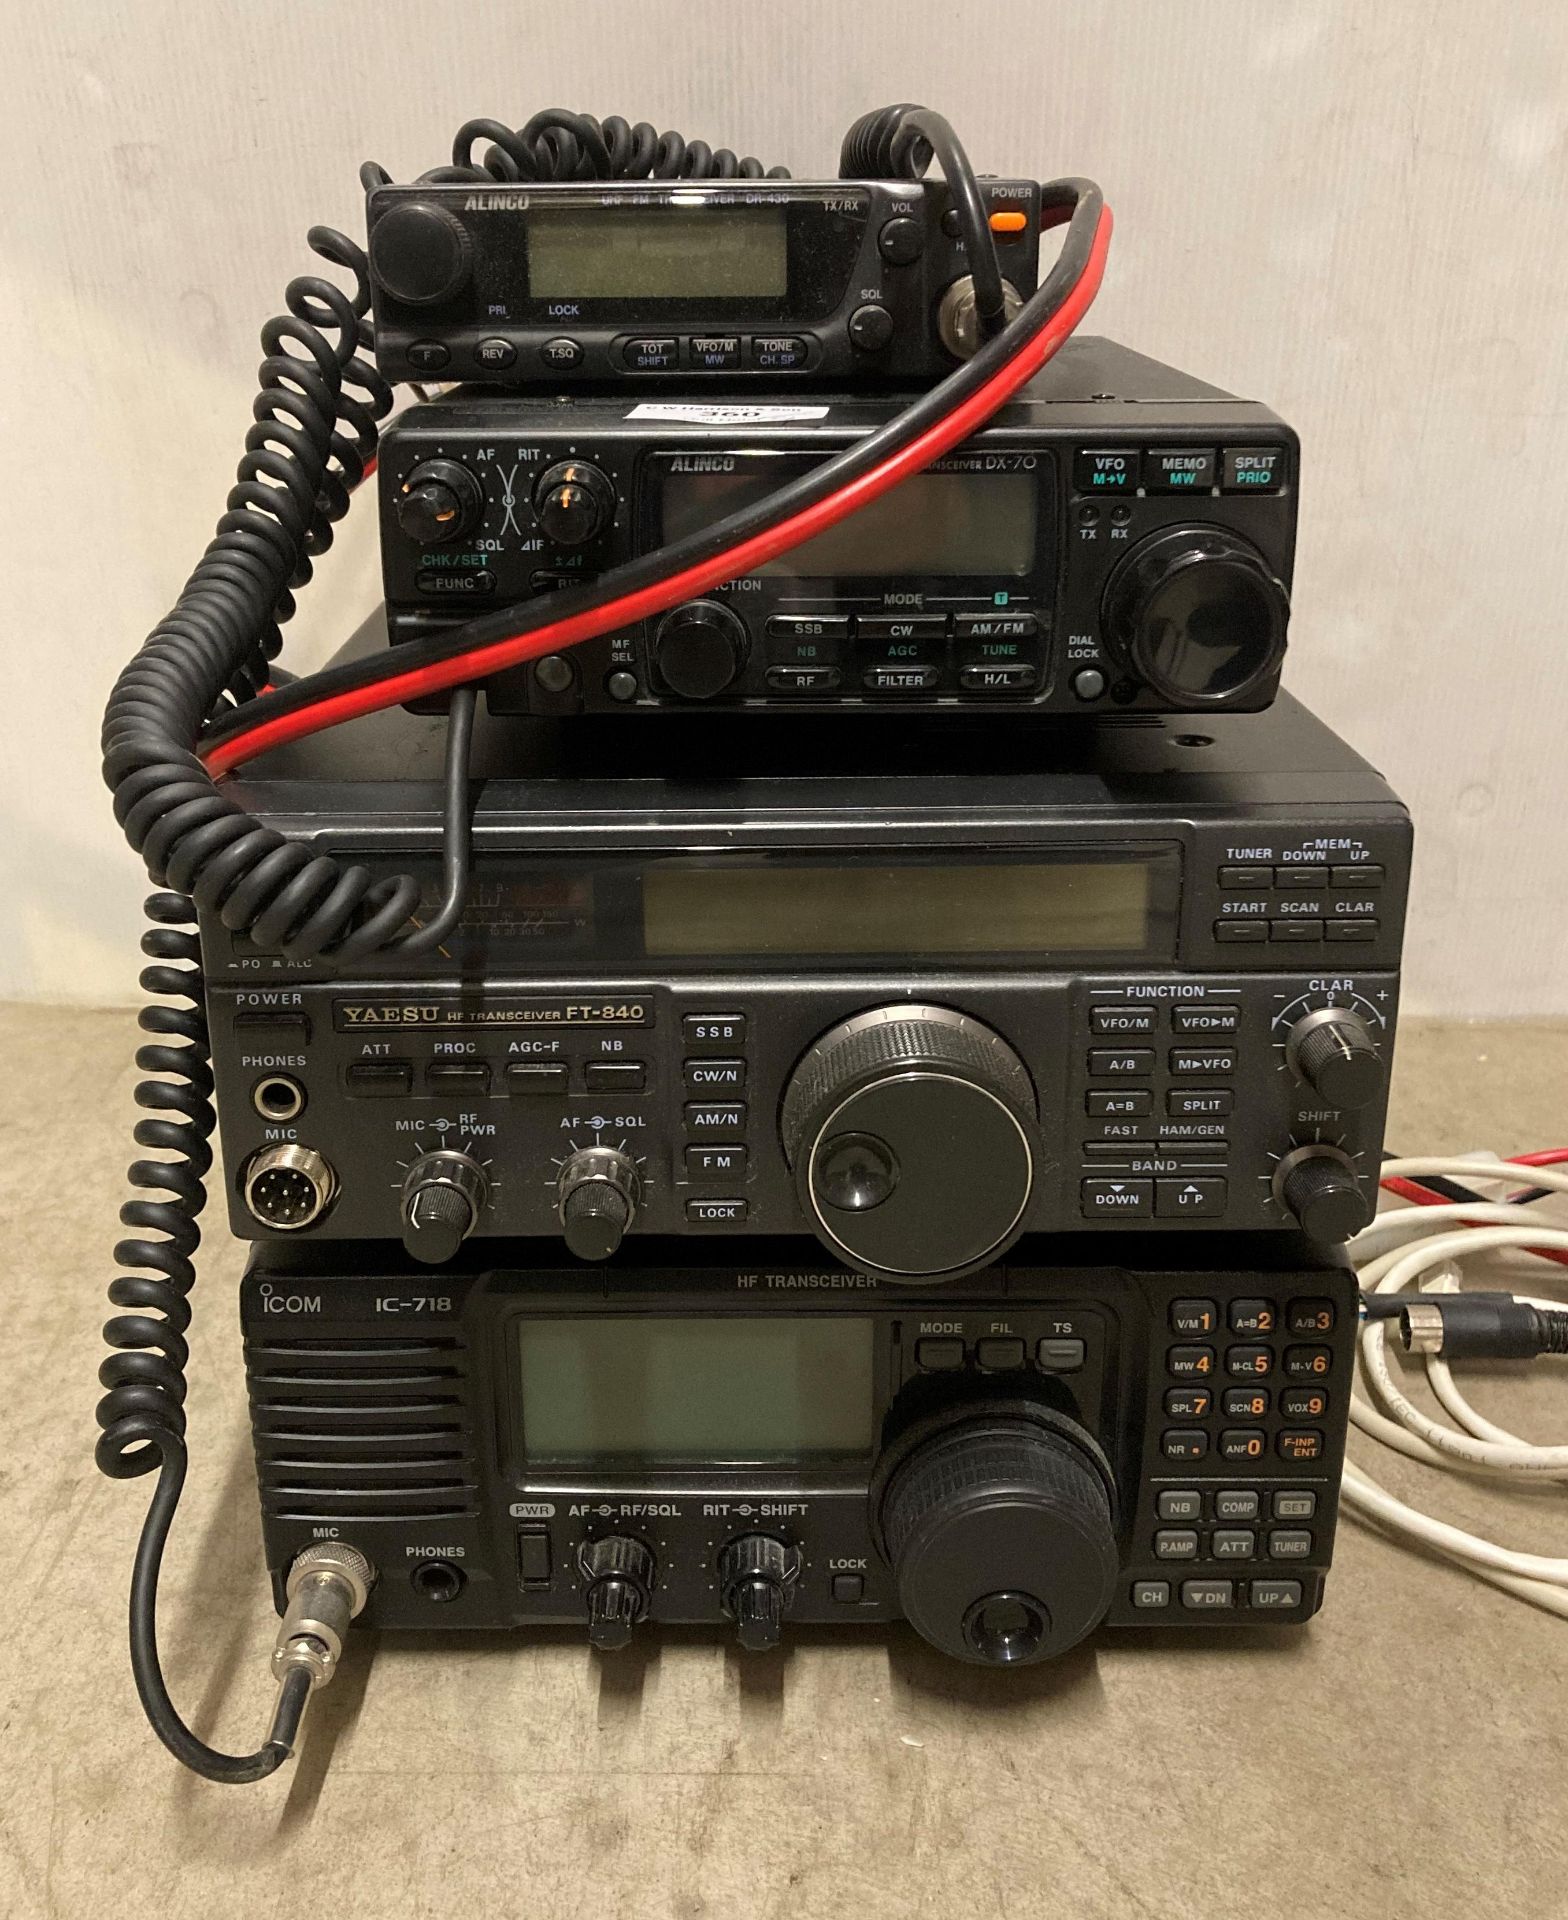 4 x assorted HF and UHF FM transceivers including Yaesu-FT-840, icom ic-718, Alinco DX-70,